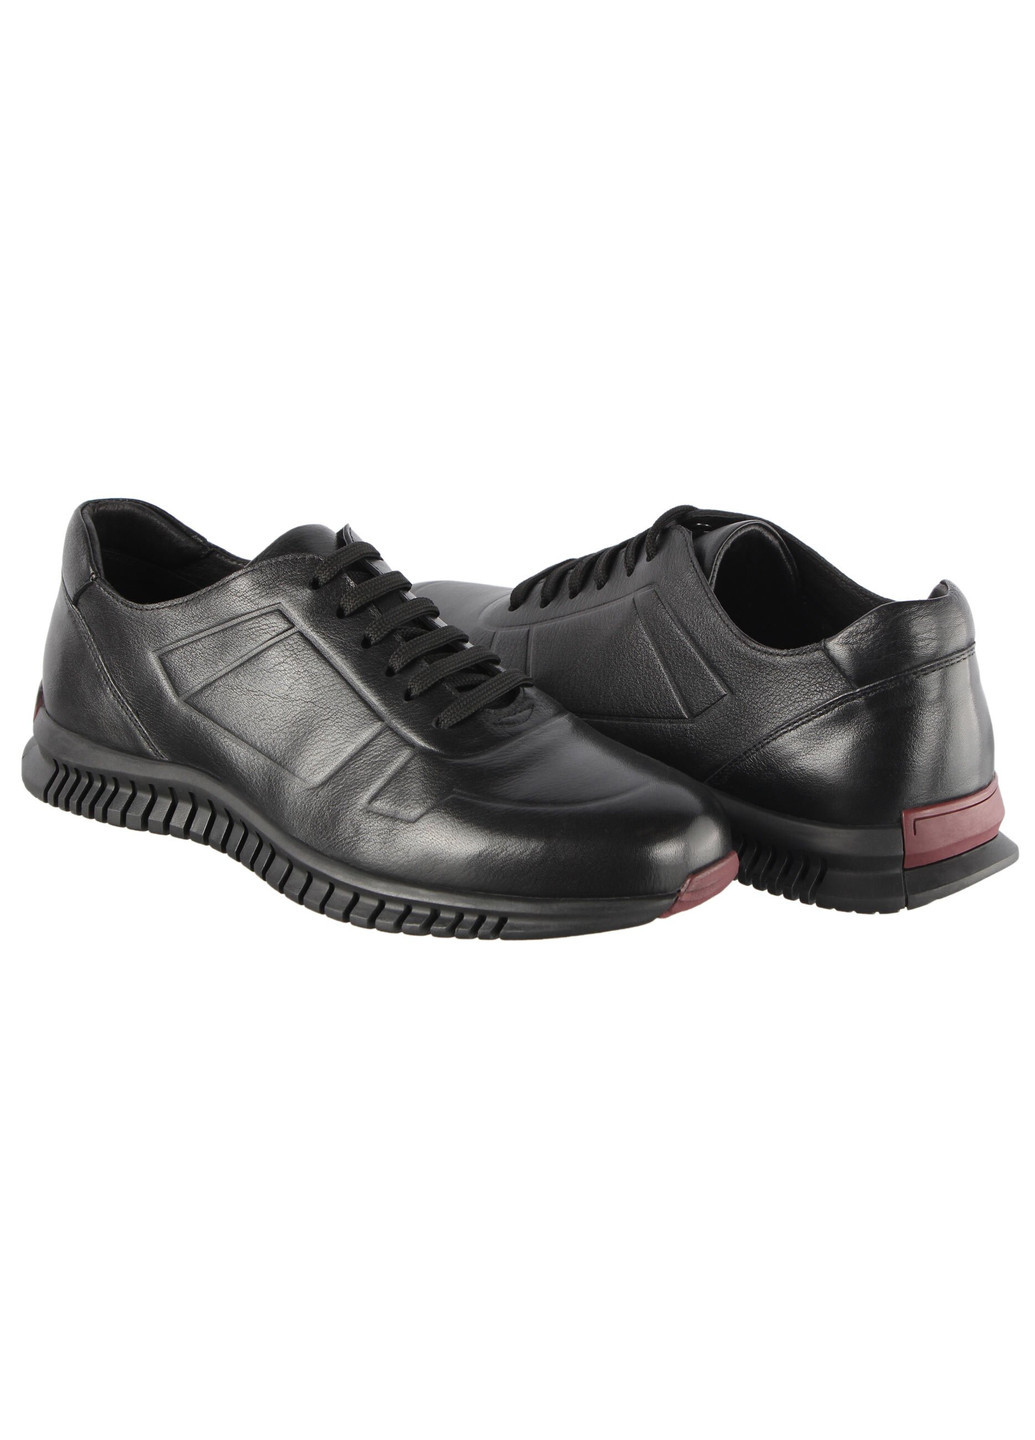 Черные демисезонные мужские кроссовки 196248 Buts